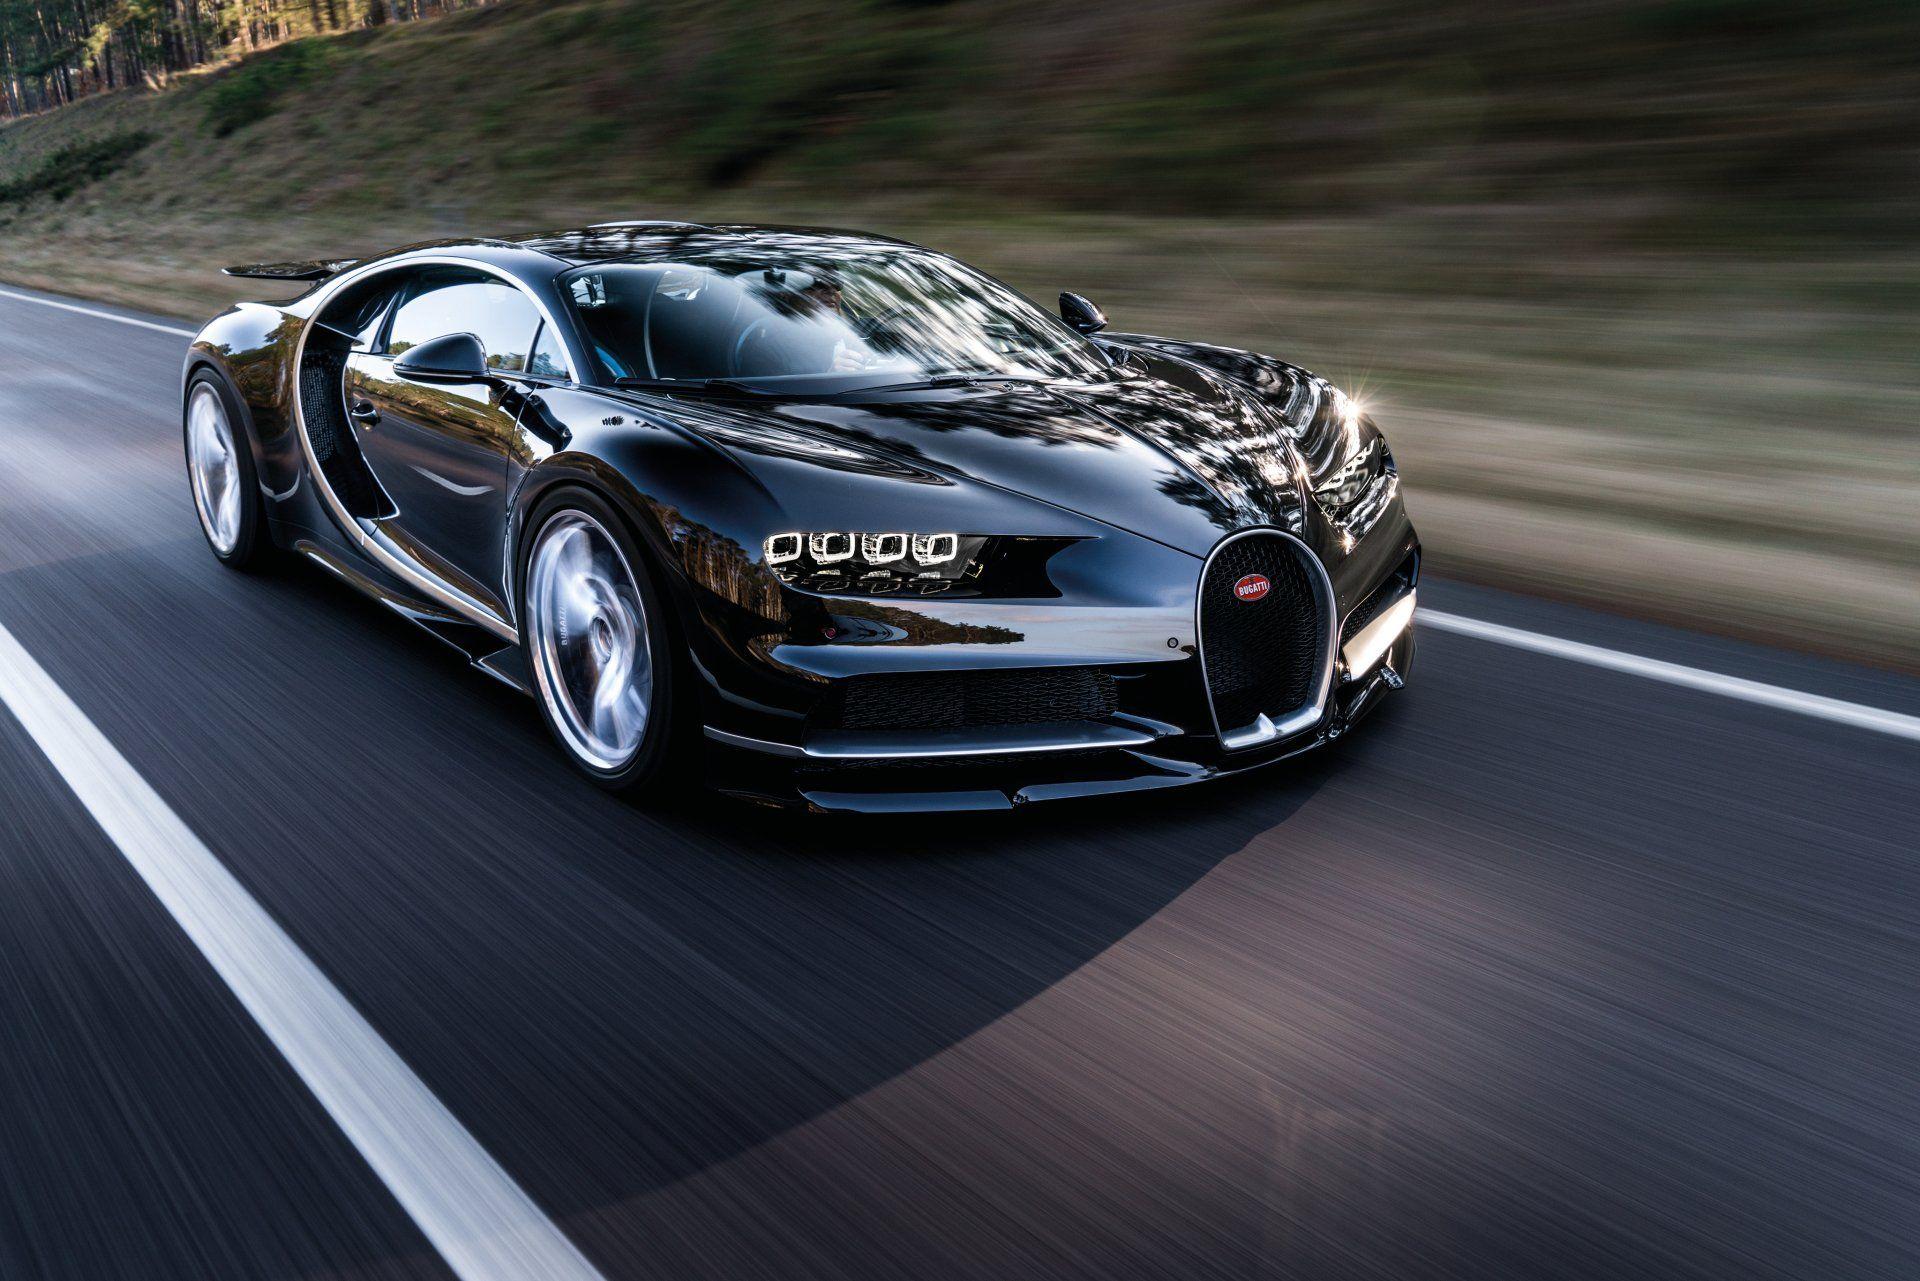 Bạn đang tìm kiếm hình ảnh đẹp của siêu xe Bugatti? Hãy ngắm nhìn những hình ảnh về Bugatti với mẫu thiết kế tuyệt đẹp, đỉnh cao công nghệ và đầy cá tính.